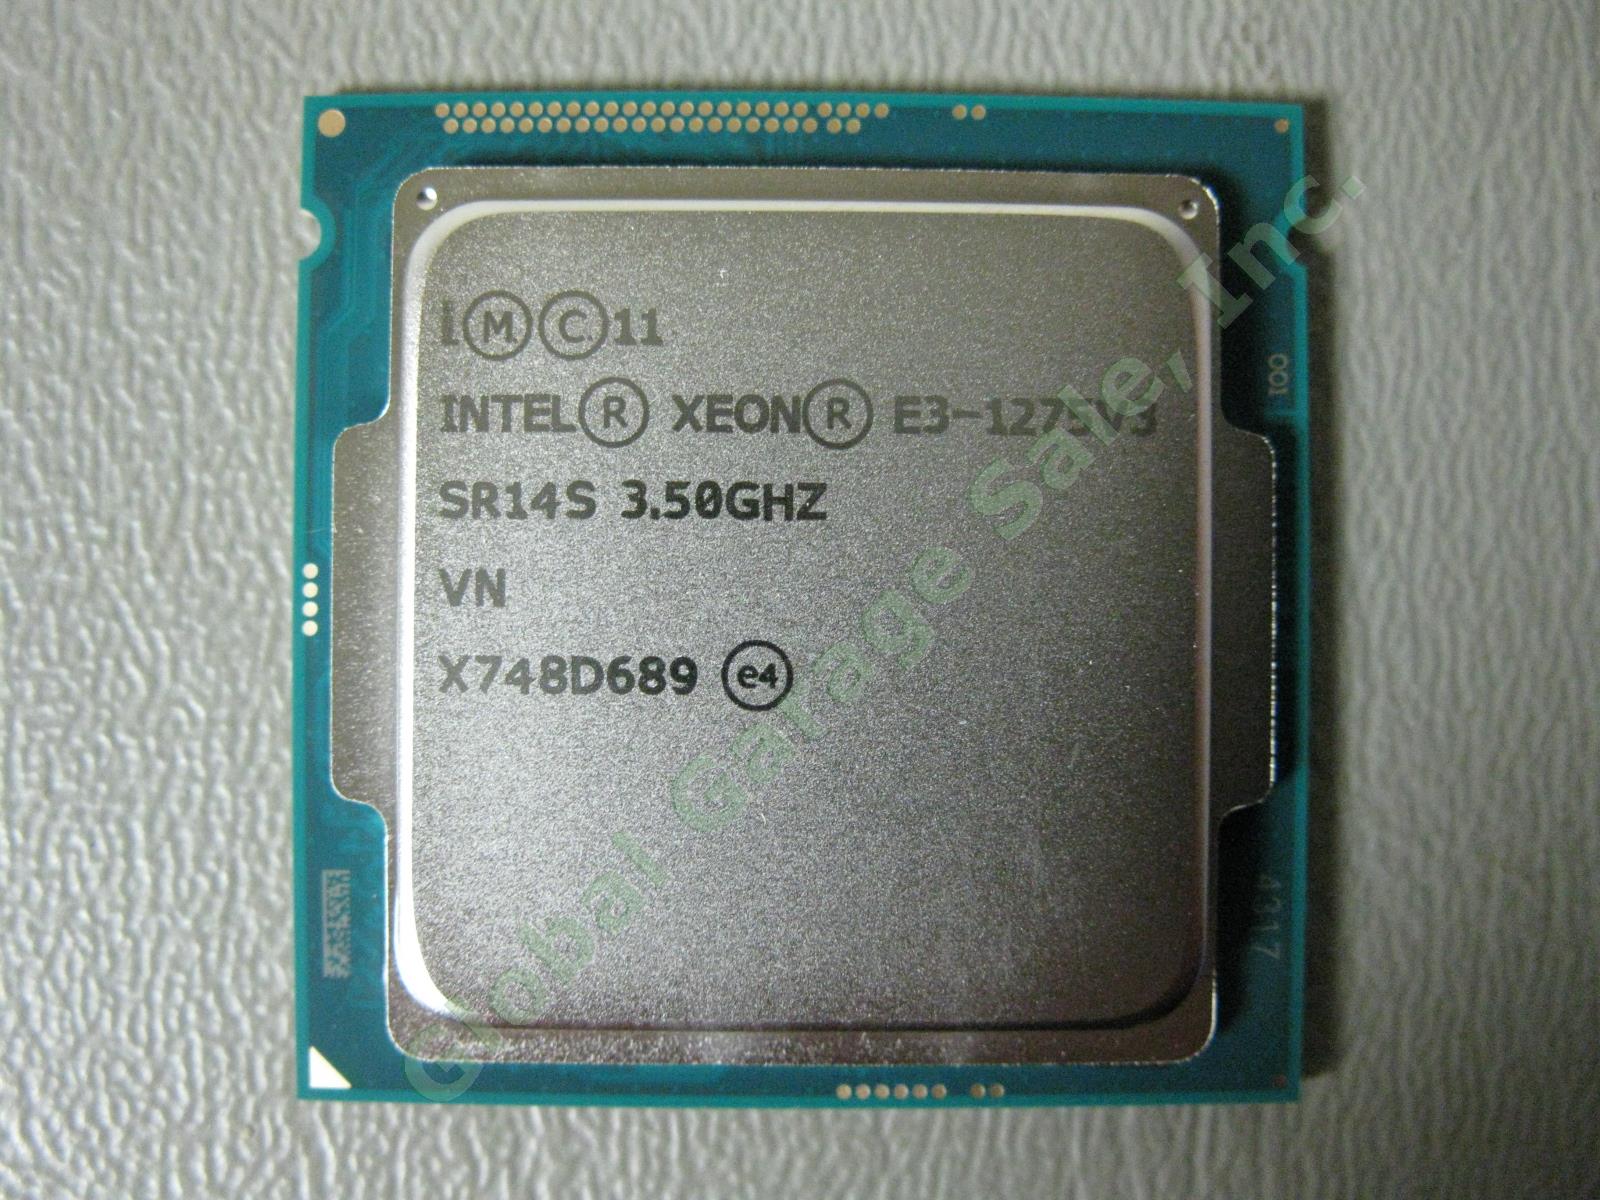 RARE SR14S Intel Xeon E3-1275v3 3.5GHz 8MB Quad Core CPU LGA1150 Processor 84W